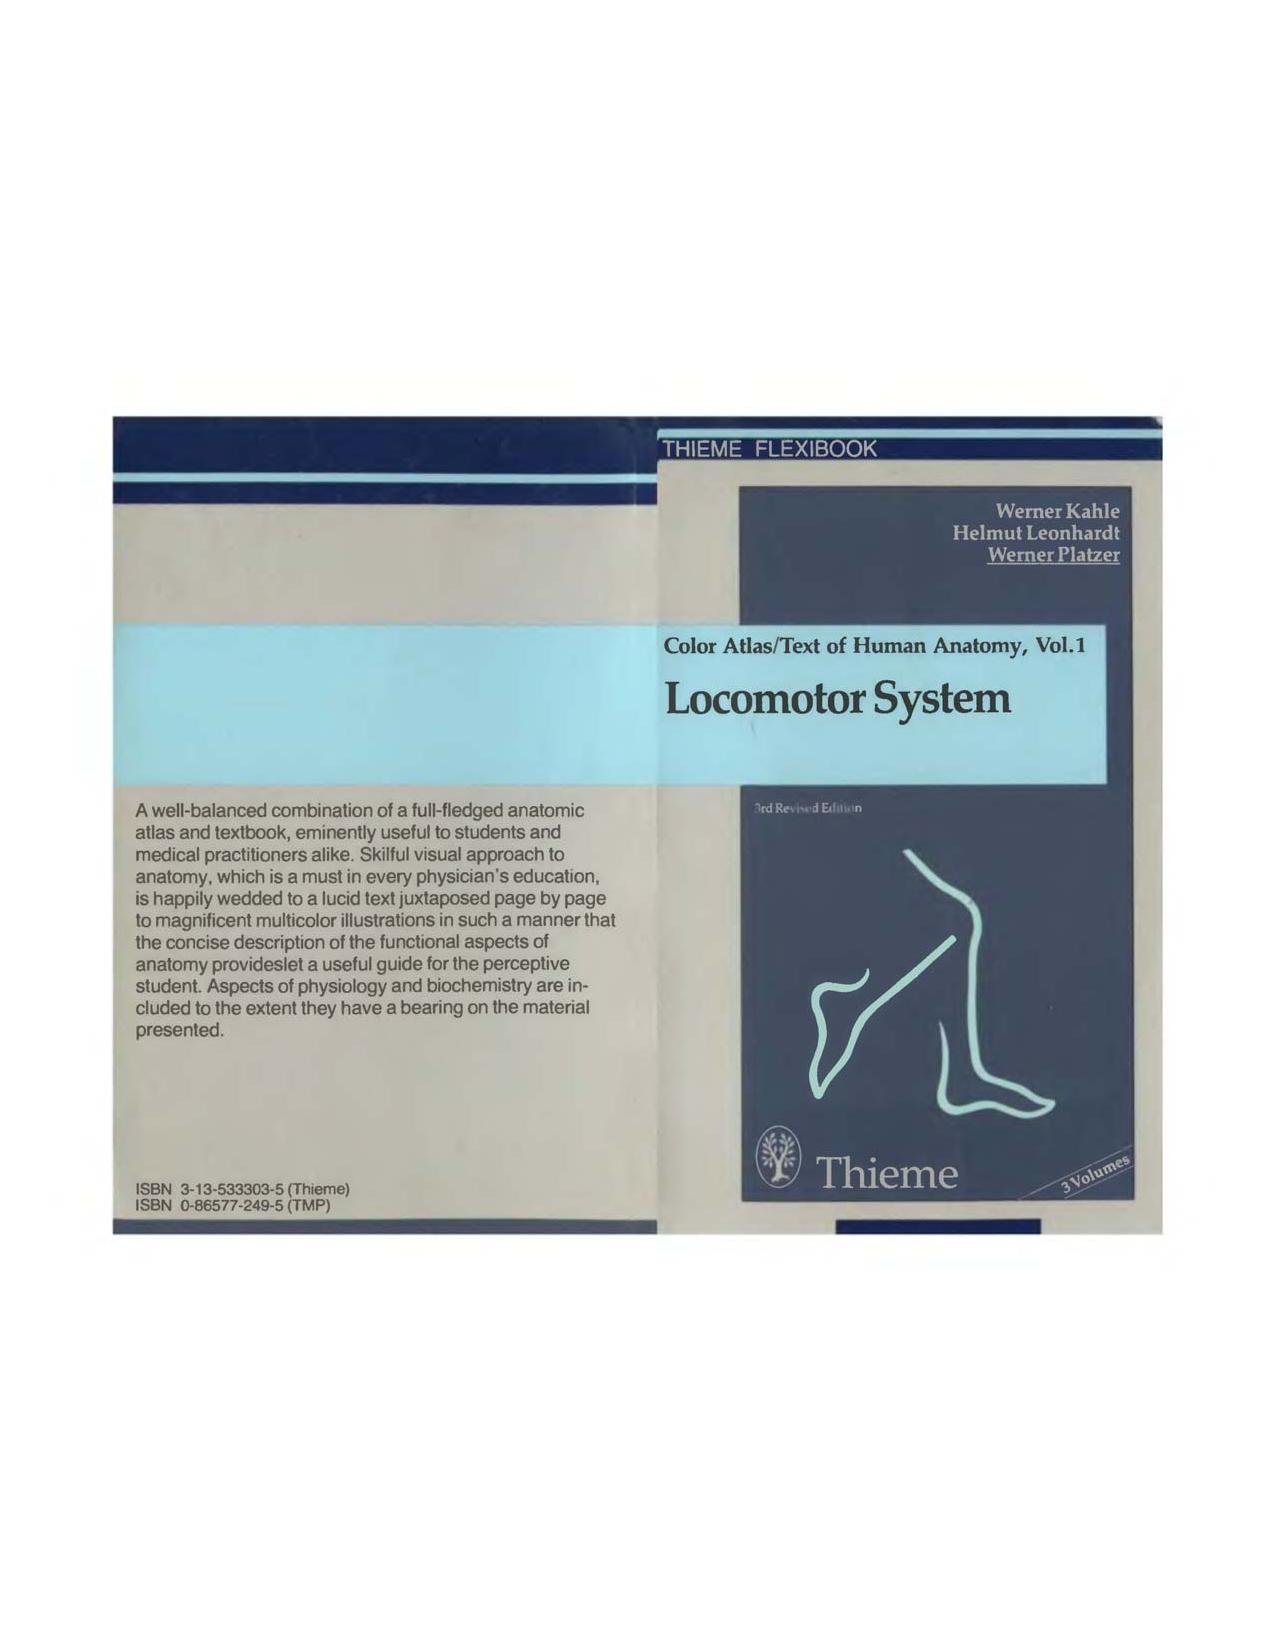 Color Atlas and Textbook of Human Anatomy ,Volume I Locomotor System - Werner Platzer, Werner Kahle, M. Frotscher.djvu